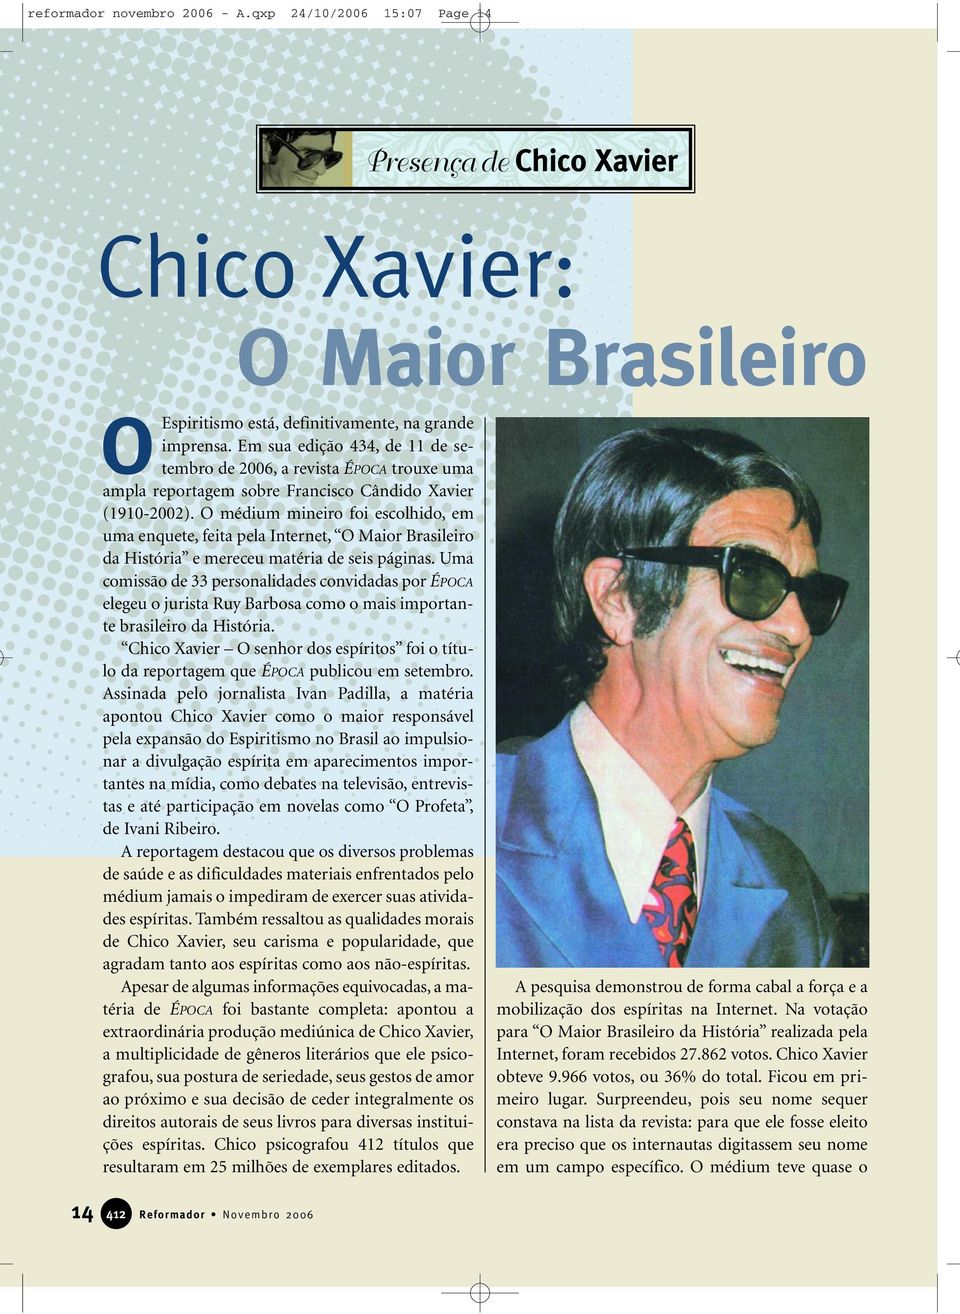 O médium mineiro foi escolhido, em uma enquete, feita pela Internet, O Maior Brasileiro da História e mereceu matéria de seis páginas.